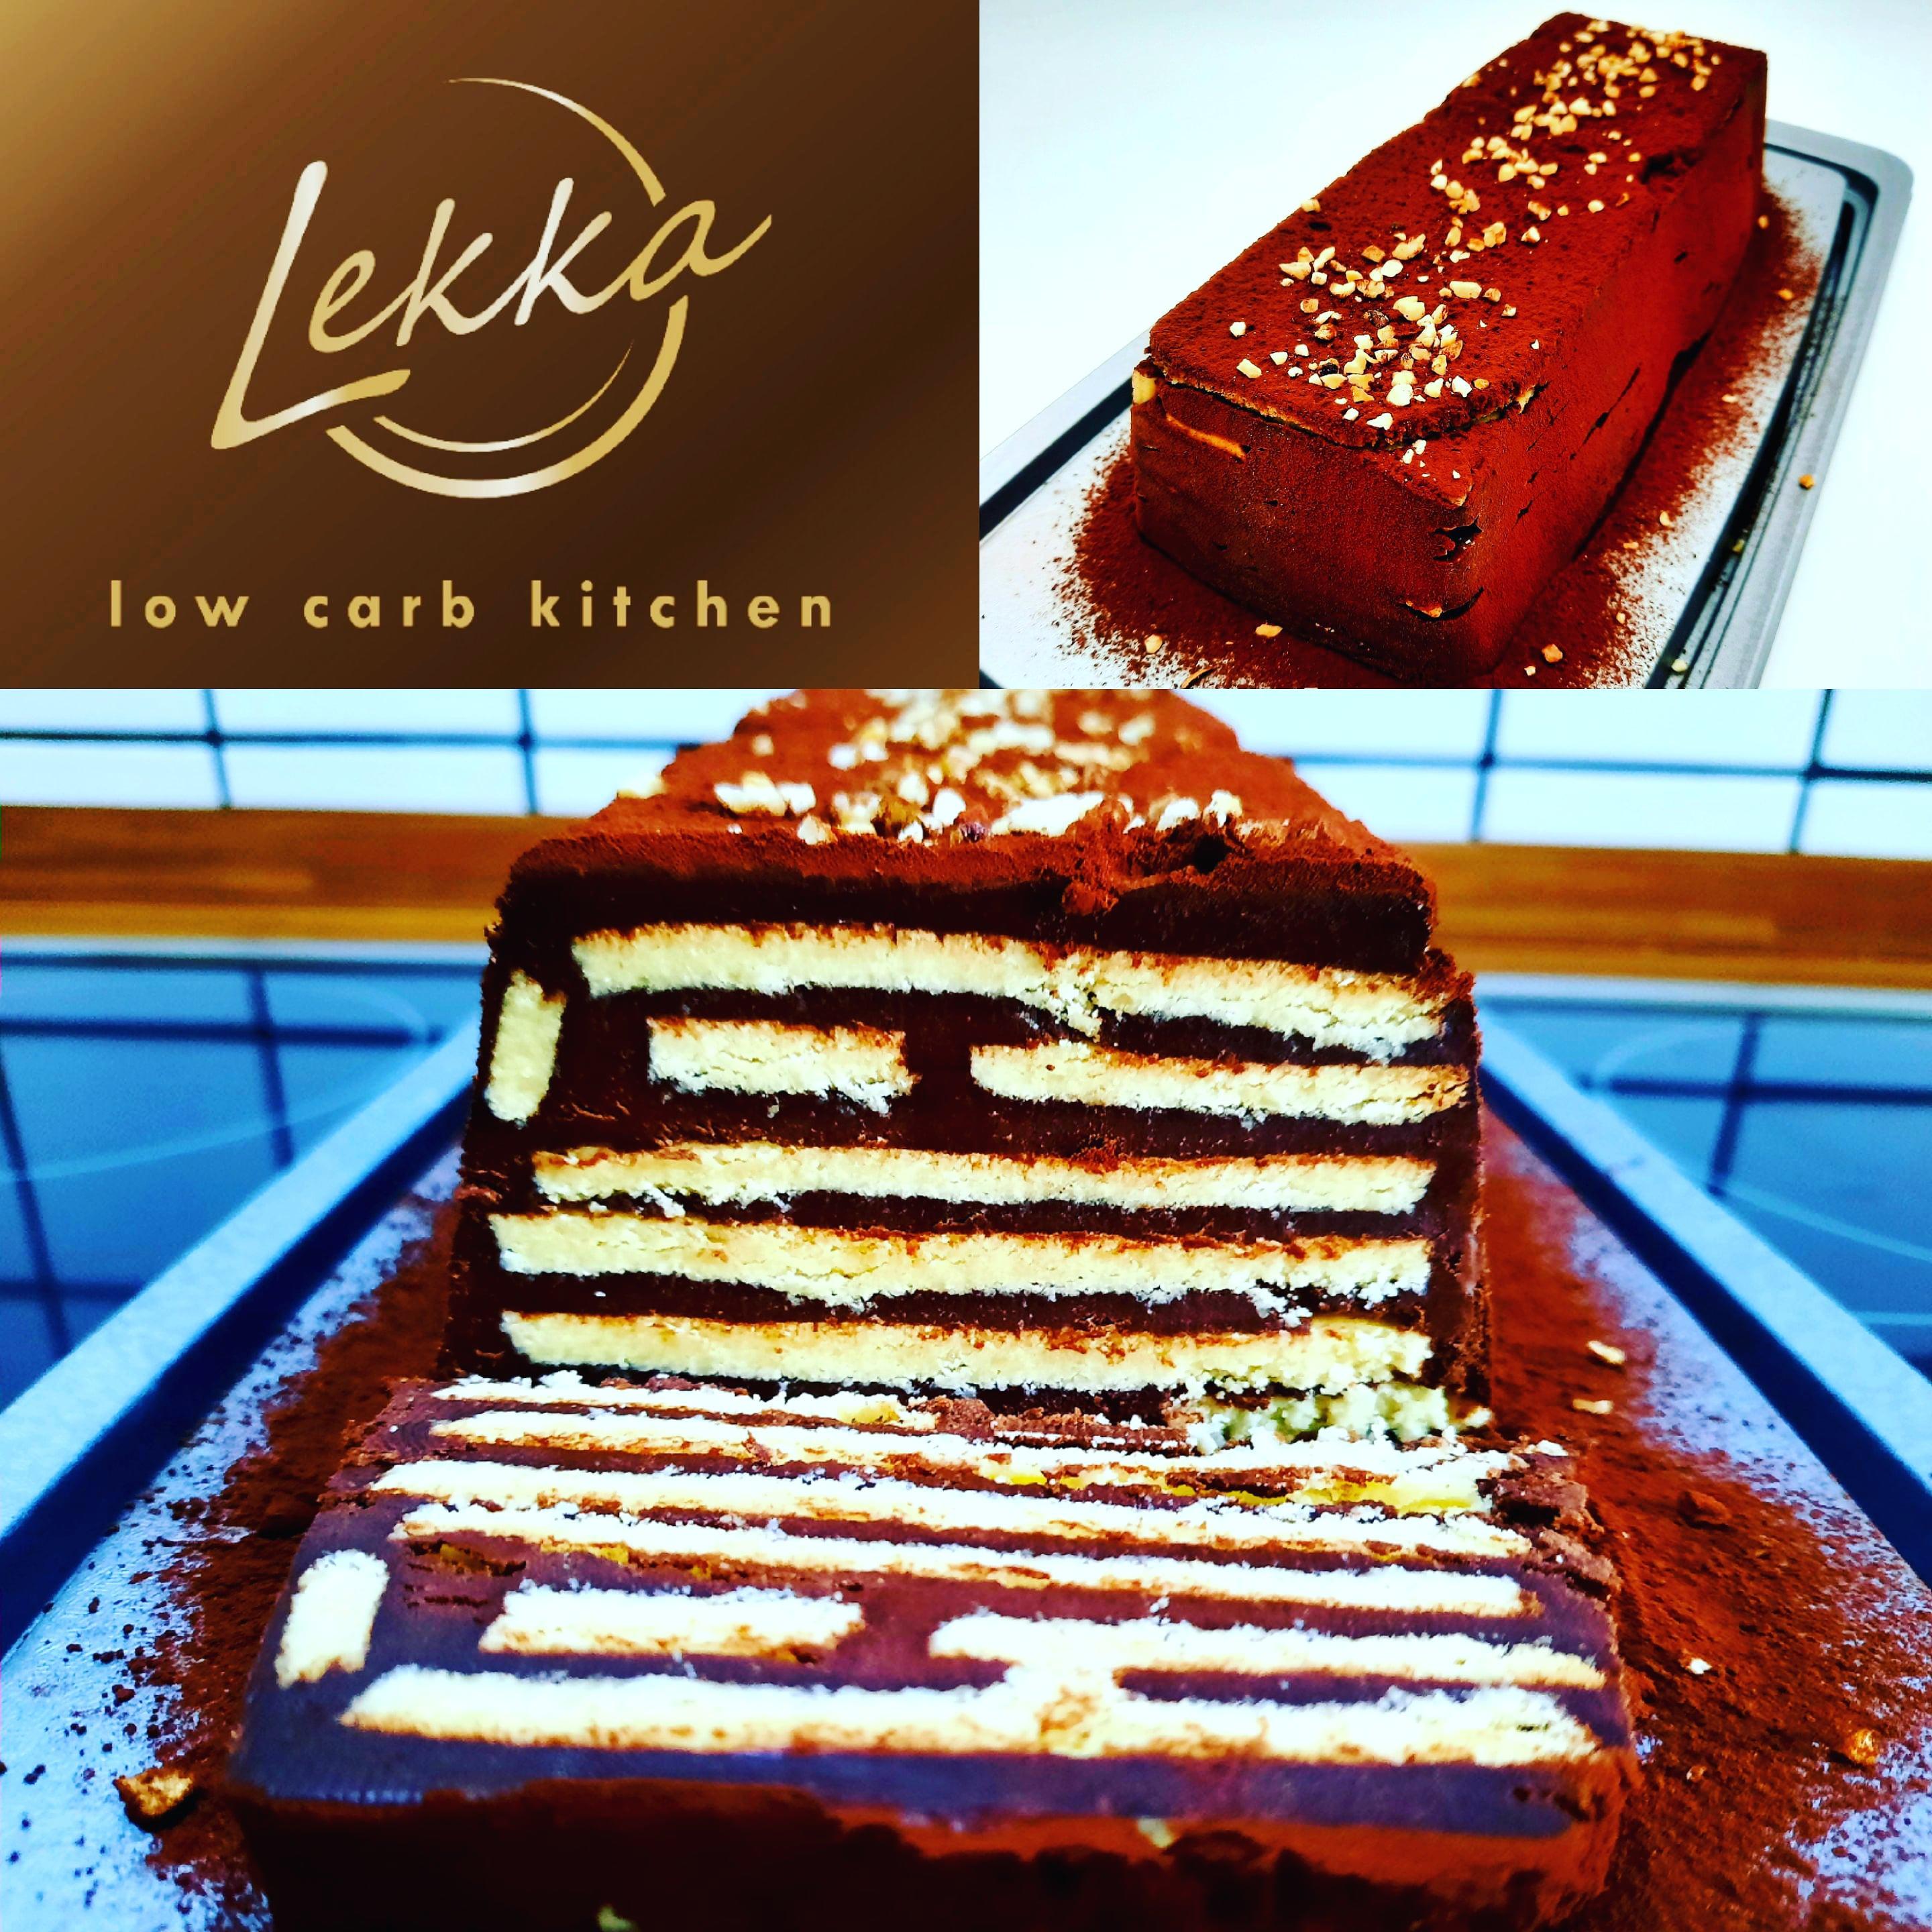 Lekka Low Carb Kitchen, Duisburger Strasse 20 in Essen